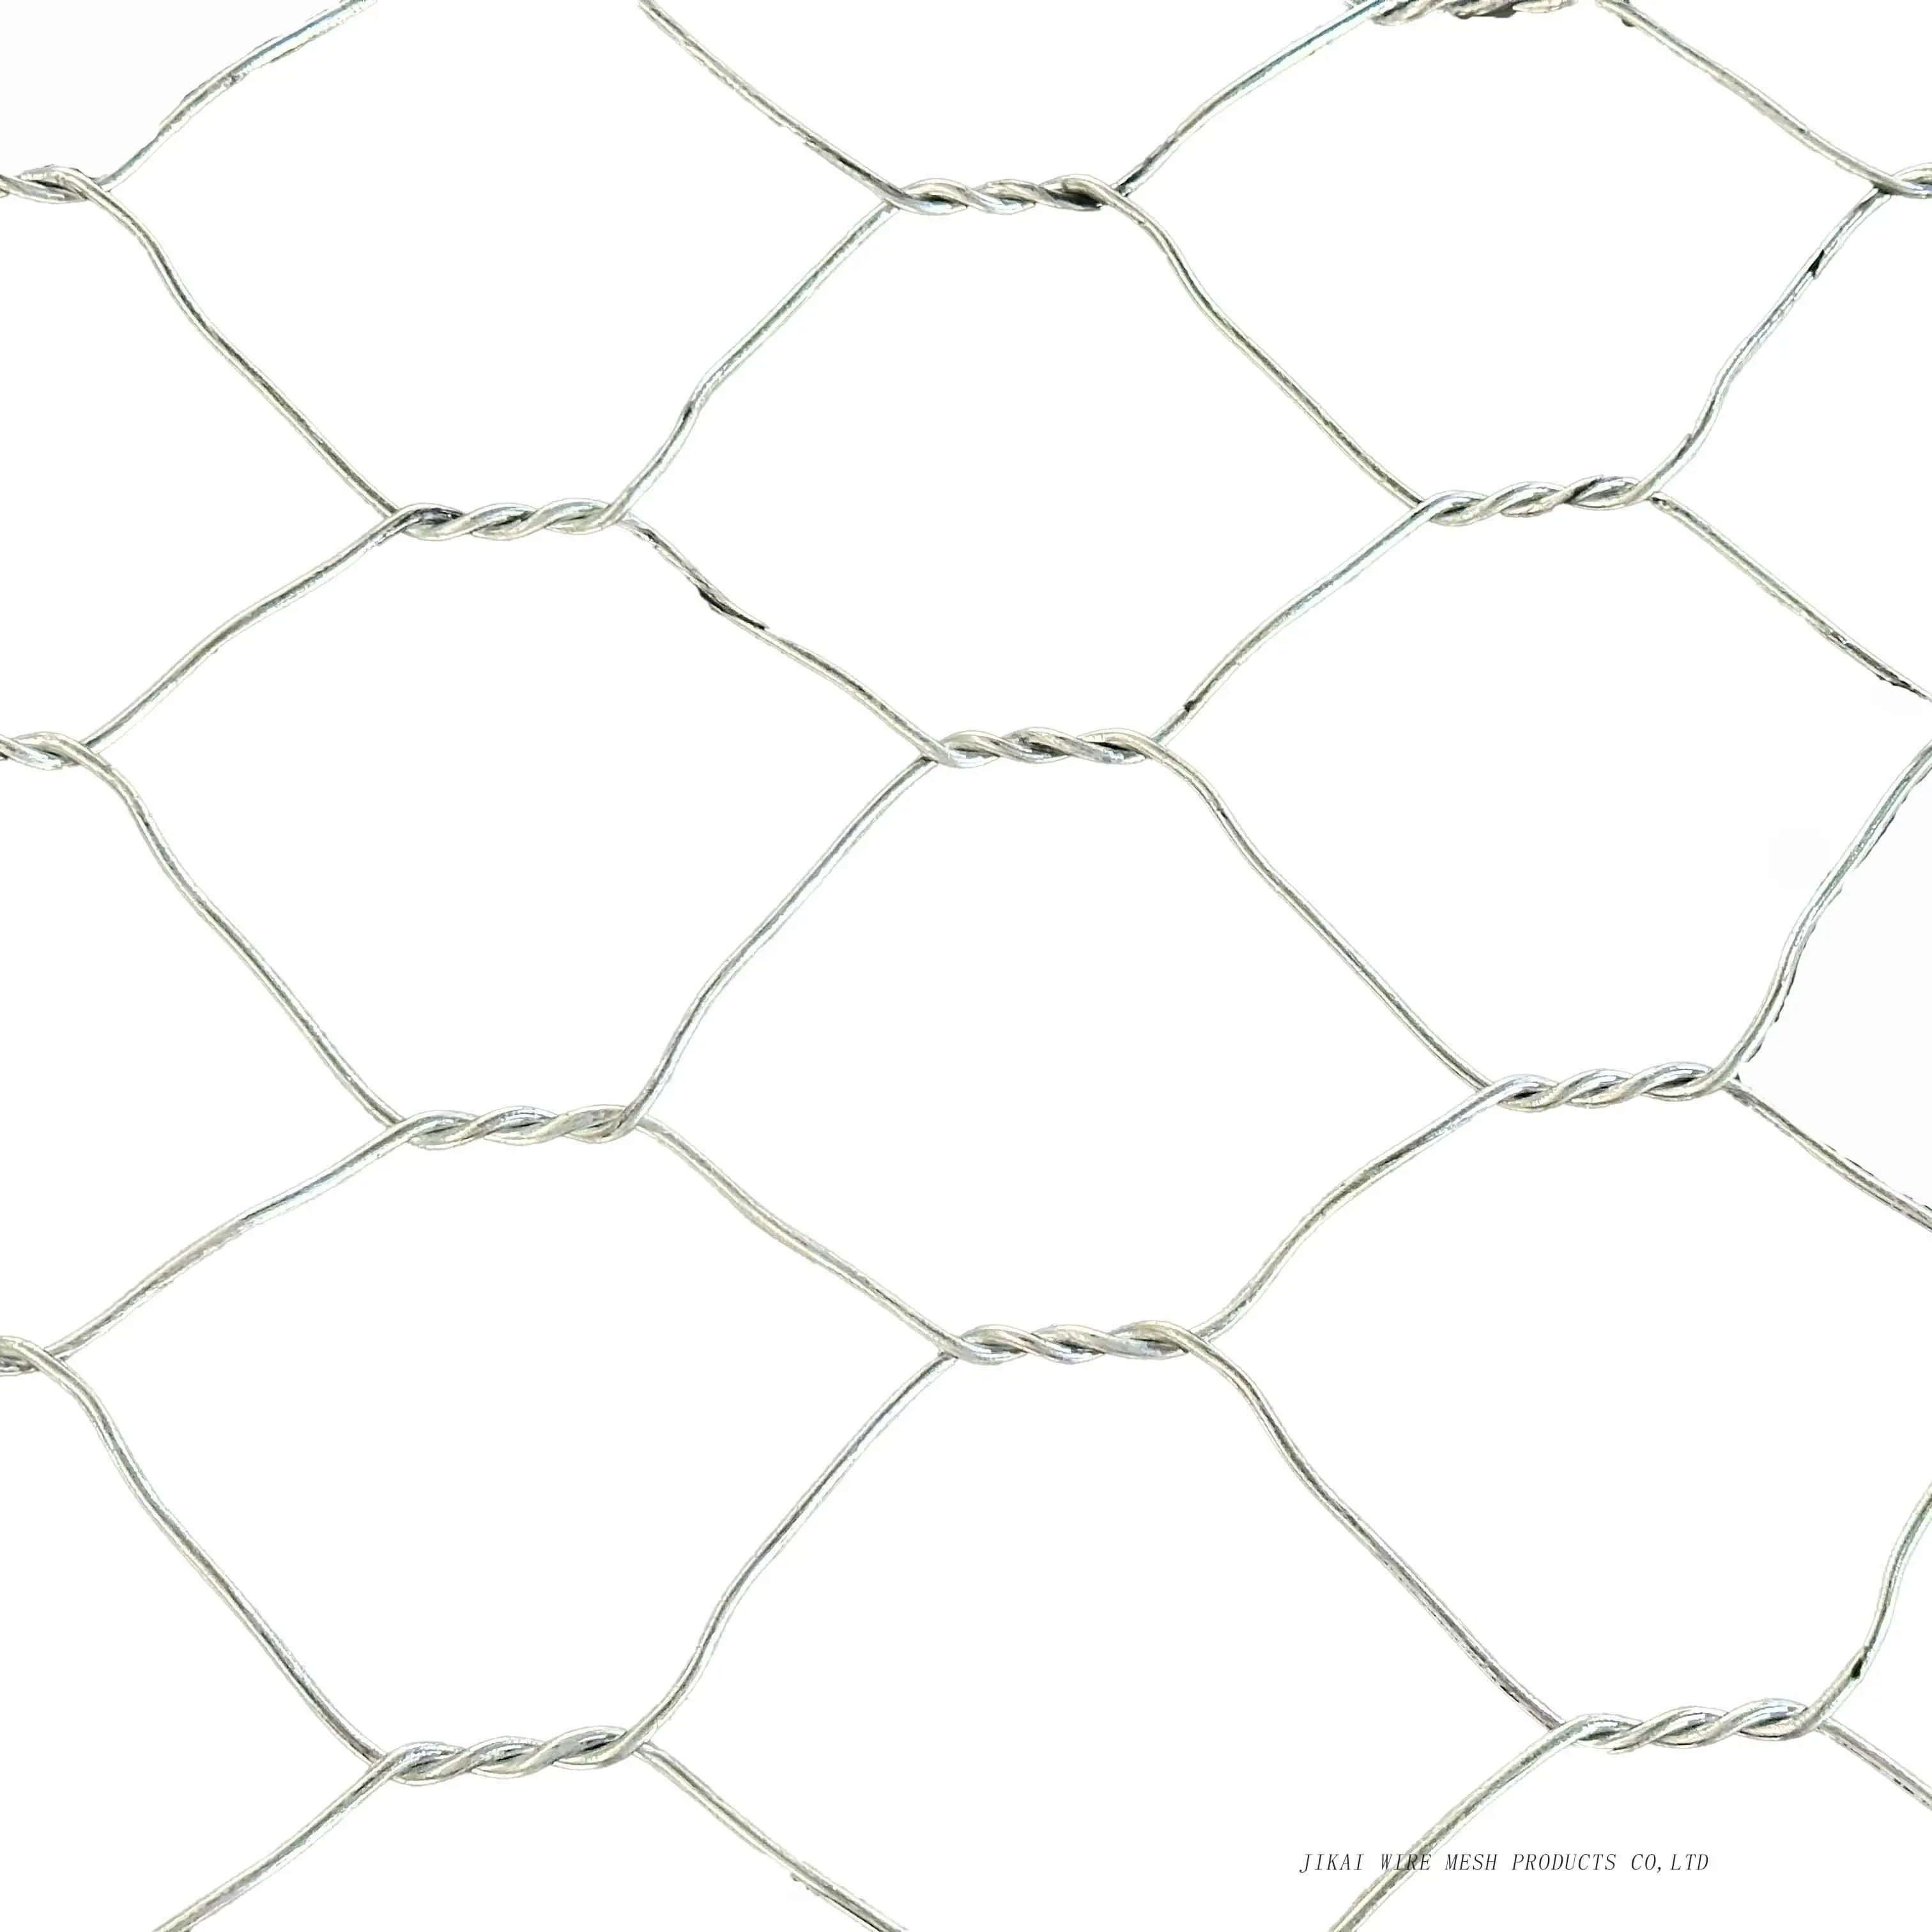 Rete metallica esagonale Anping esagonale rete metallica/pollaio recinzione in ferro